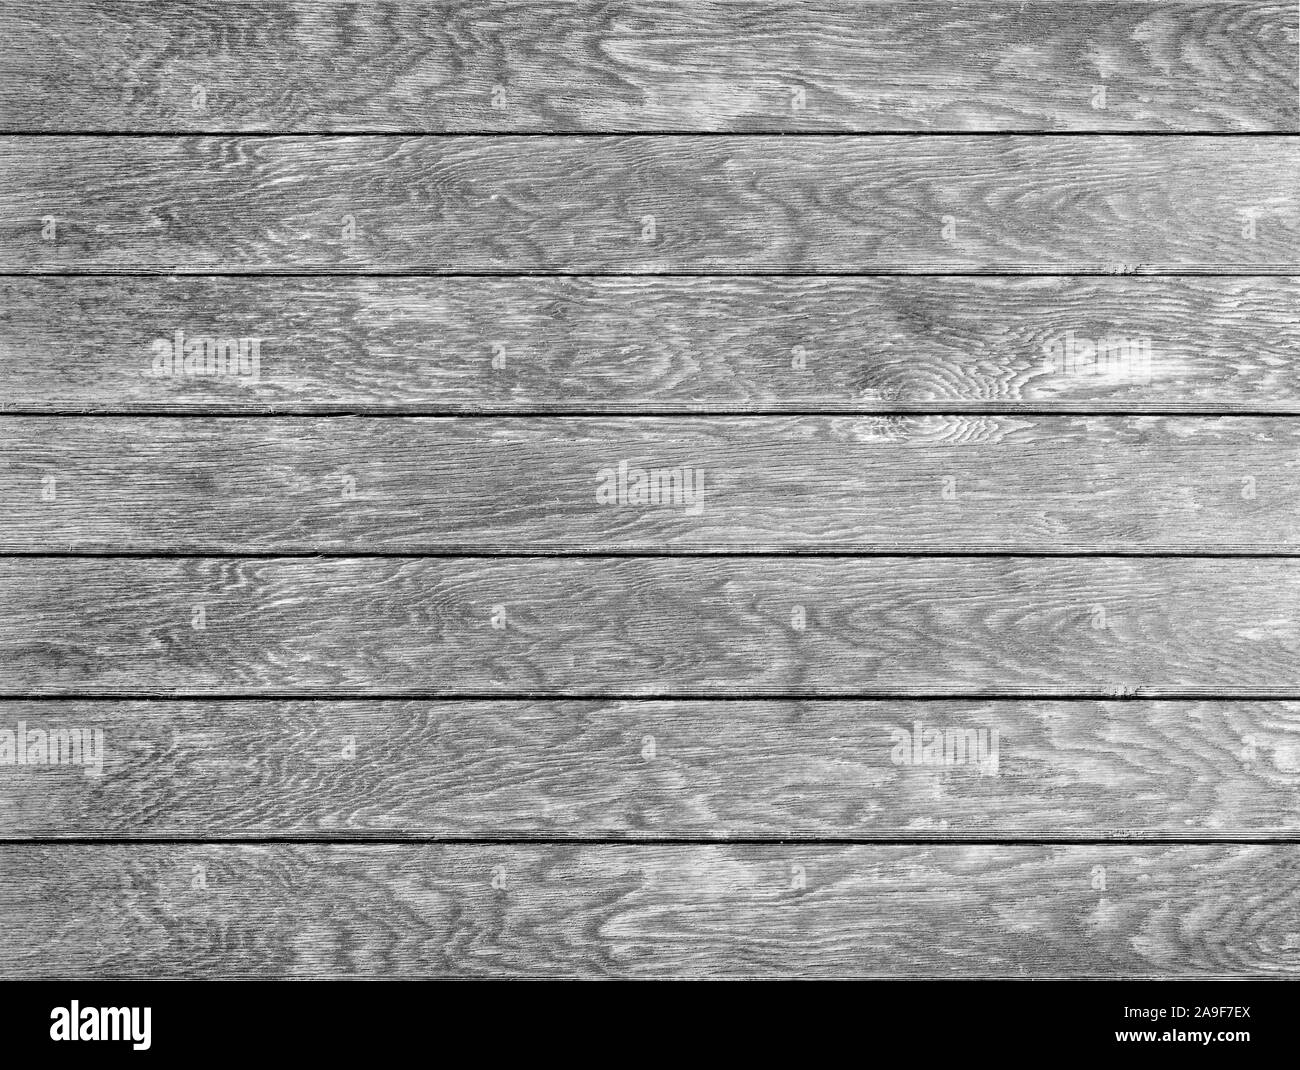 Fond de bois noir-blanc Banque D'Images